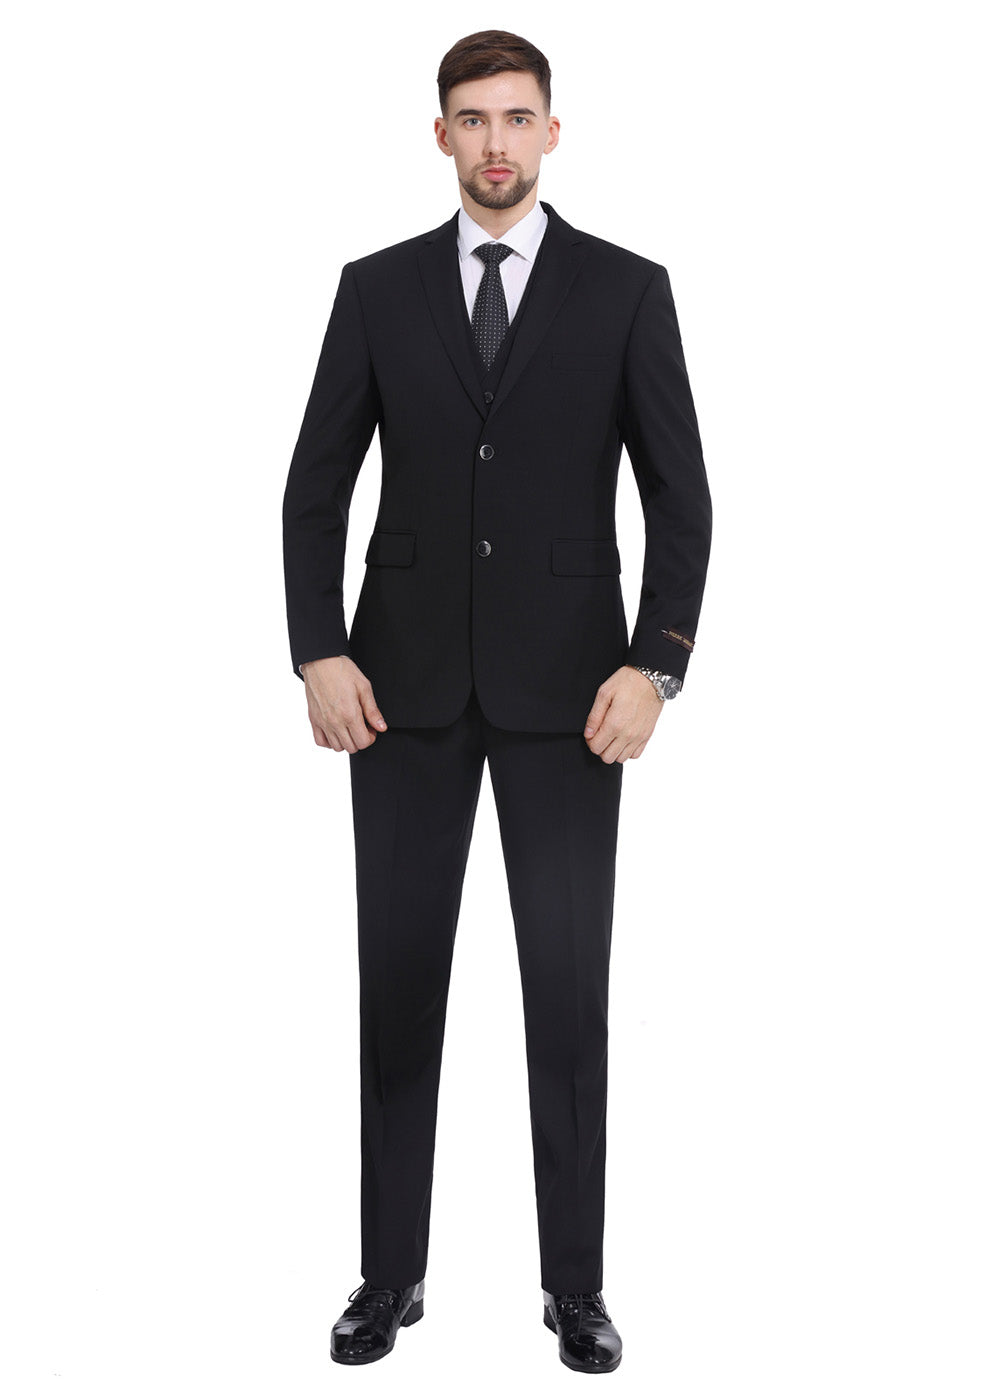 Men's Jacket Pants Set 3 Piece | 3 Pieces Men's Wedding Suit - Men's Suit  Jacket Vest - Aliexpress